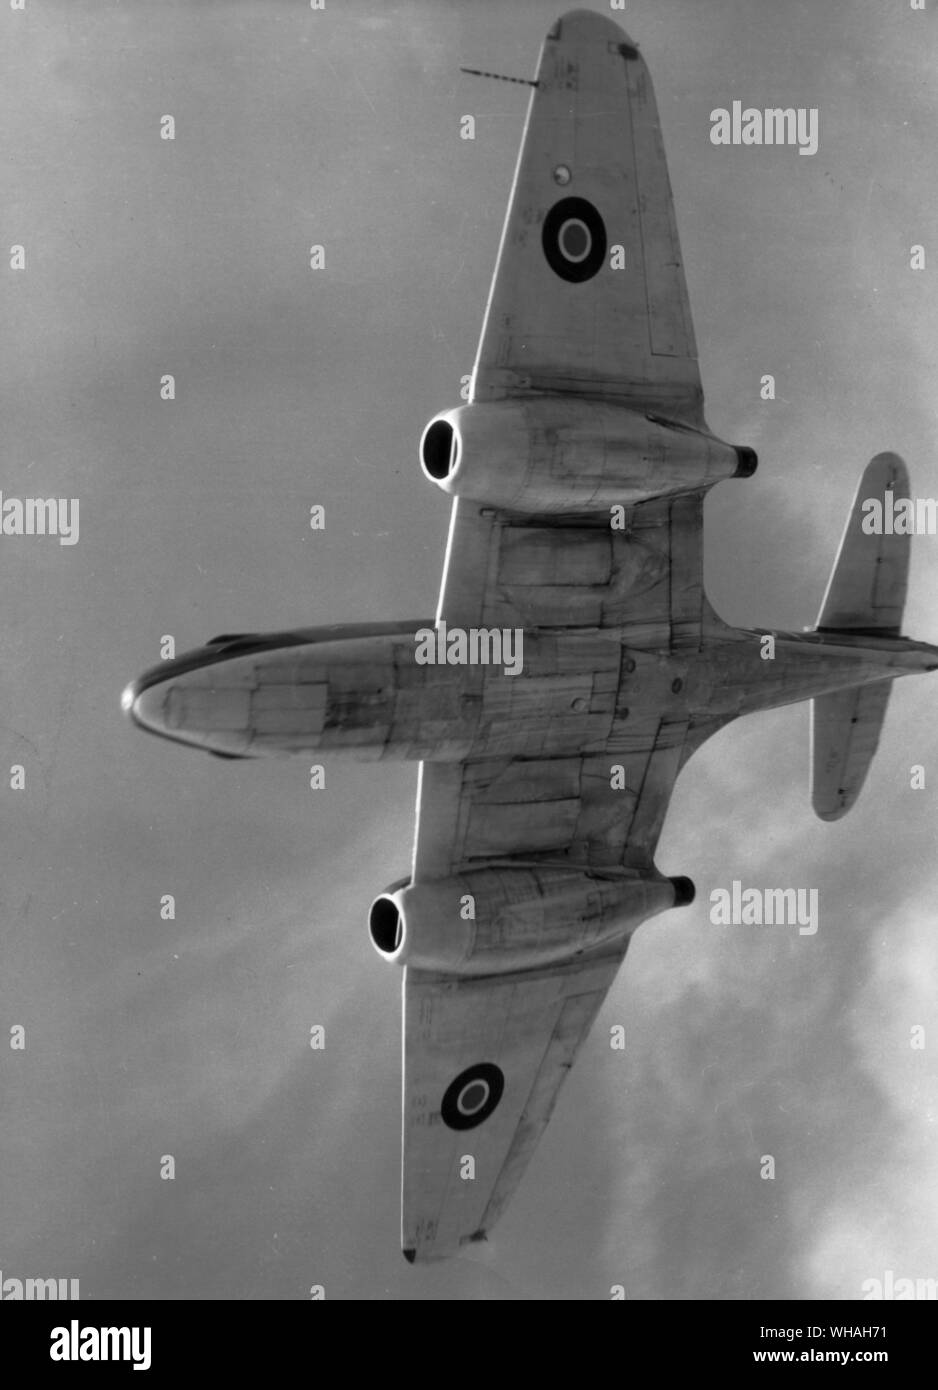 Le 'Meteor' RAF Fighter jet propulsé. Vue vers de Meteor en vol. Premier avion à réaction de la Royal Air Force à entrer en service en juillet 1944 et le seul avion de chasse alliés à être utilisées pendant la SECONDE GUERRE MONDIALE Banque D'Images